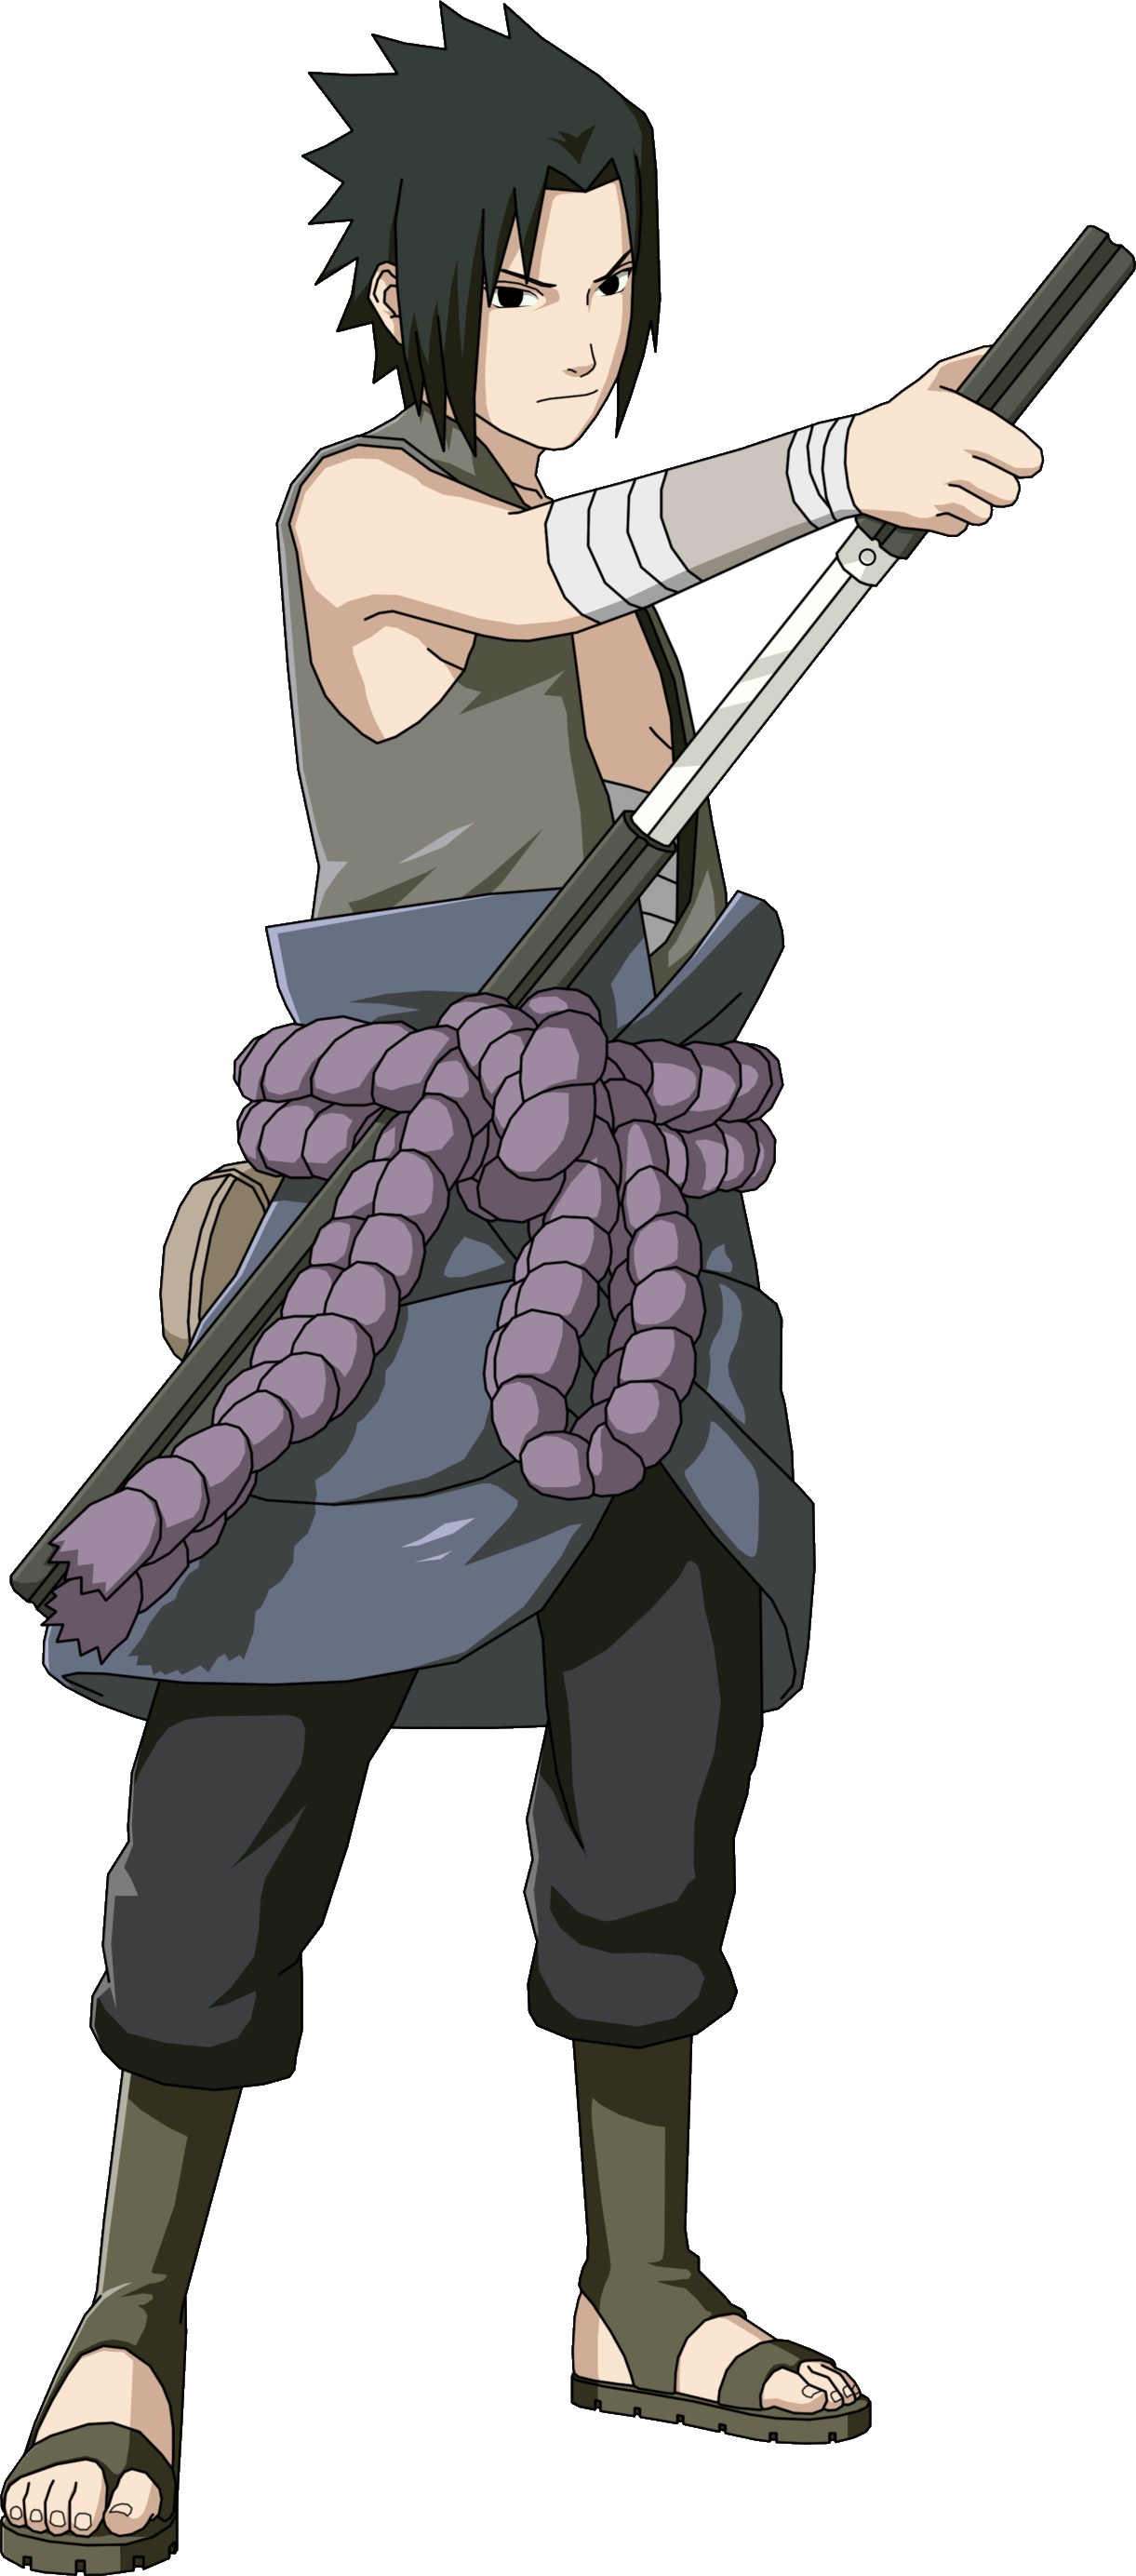 Image - Sasuke sleeveless.png | Narutopedia | FANDOM ...
 Naruto Sasuke Shippuden